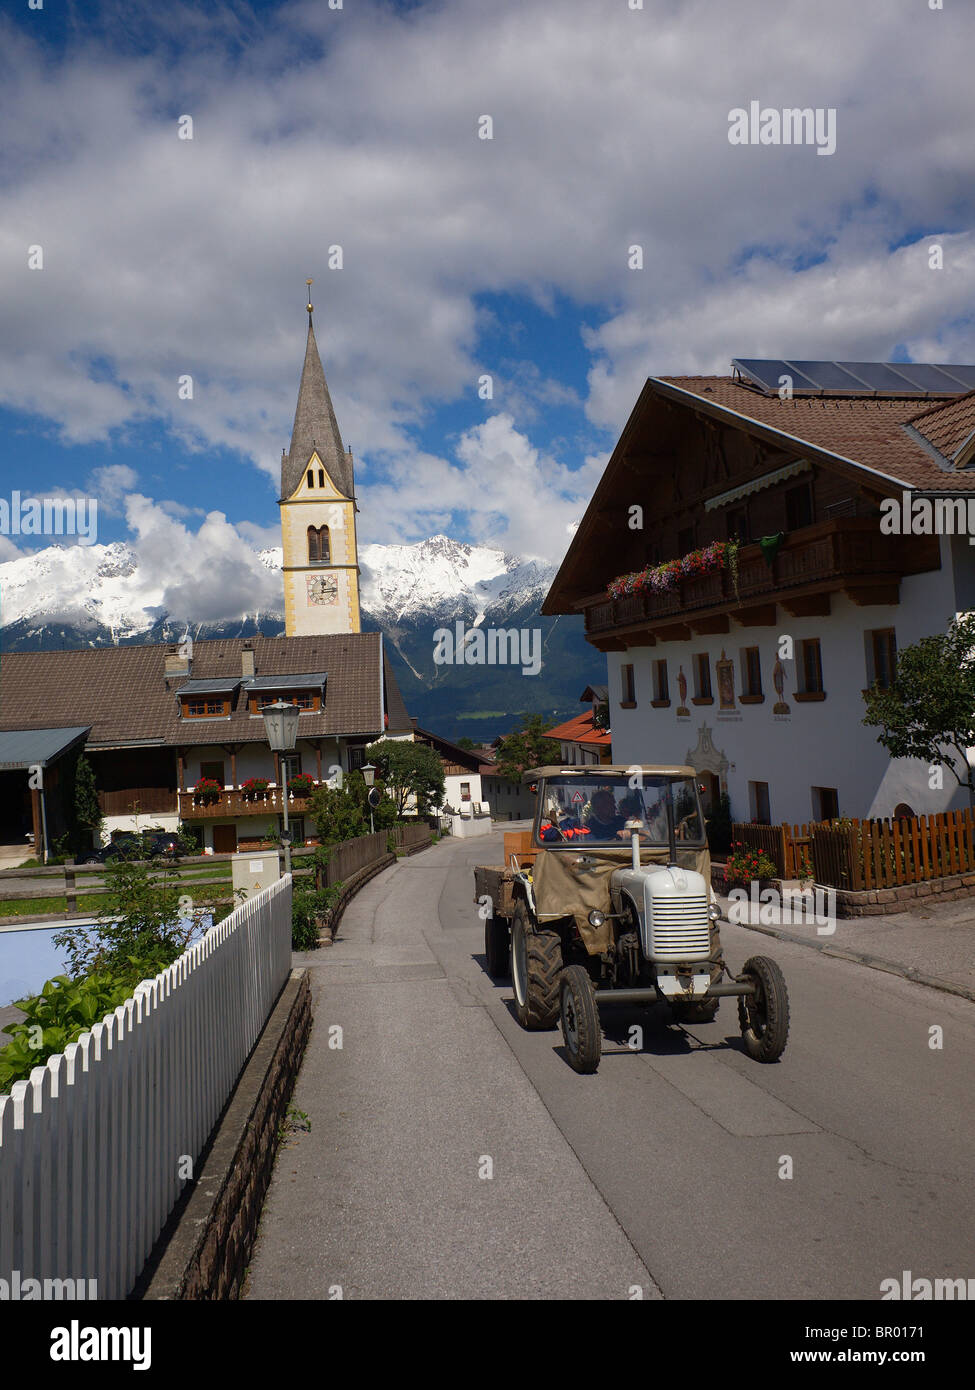 Un vieux tracteur roulant sur le village de Sistrans près d'Innsbruck dans le Tyrol autrichien Banque D'Images